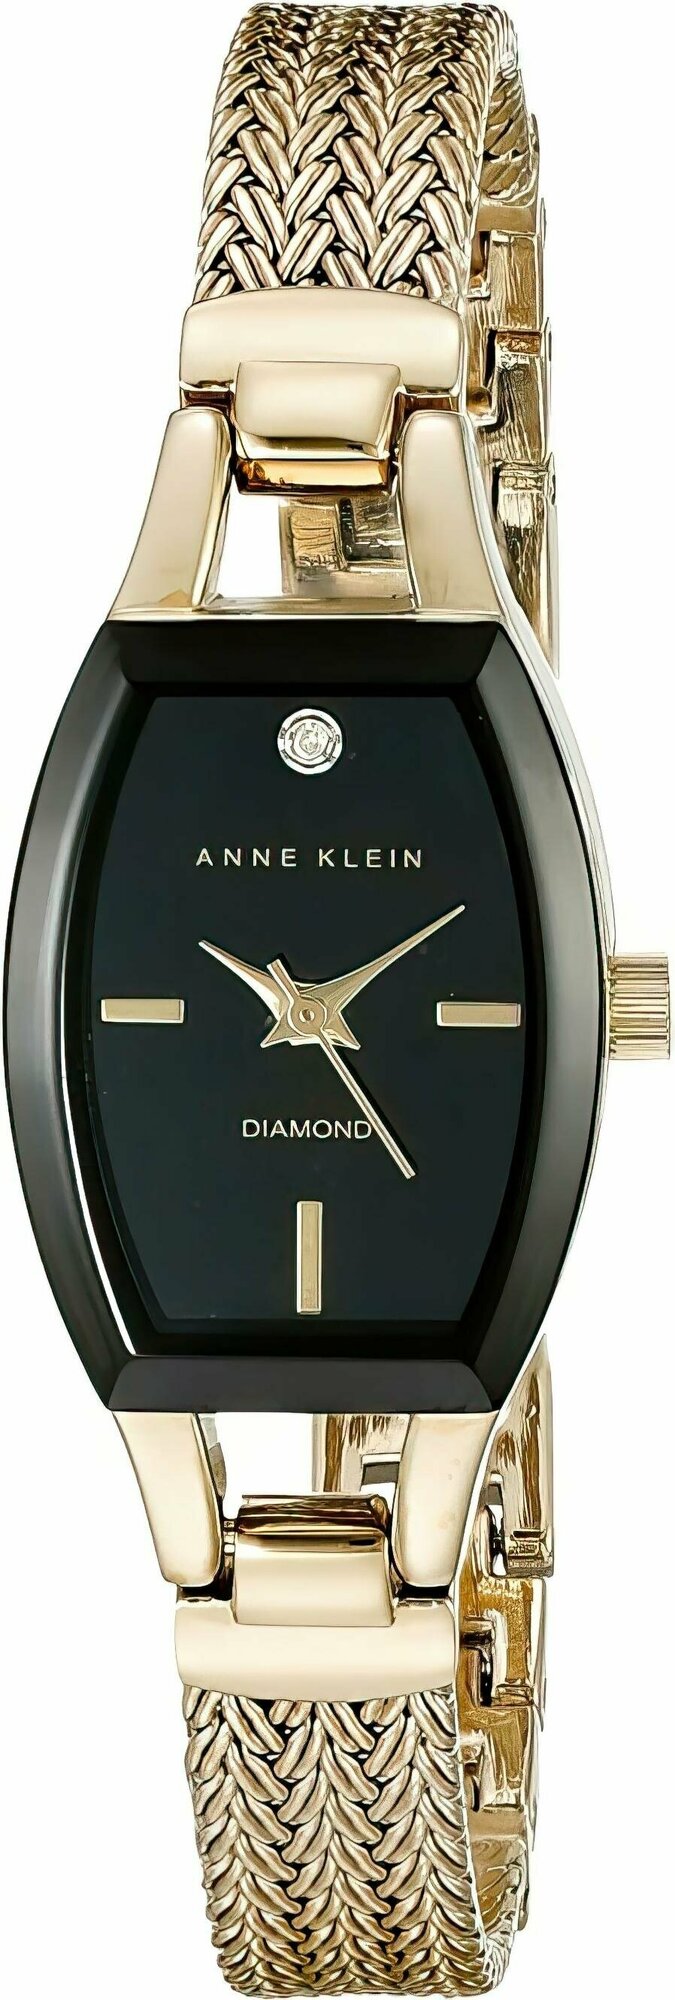 Наручные часы ANNE KLEIN Diamond 2184BKGB